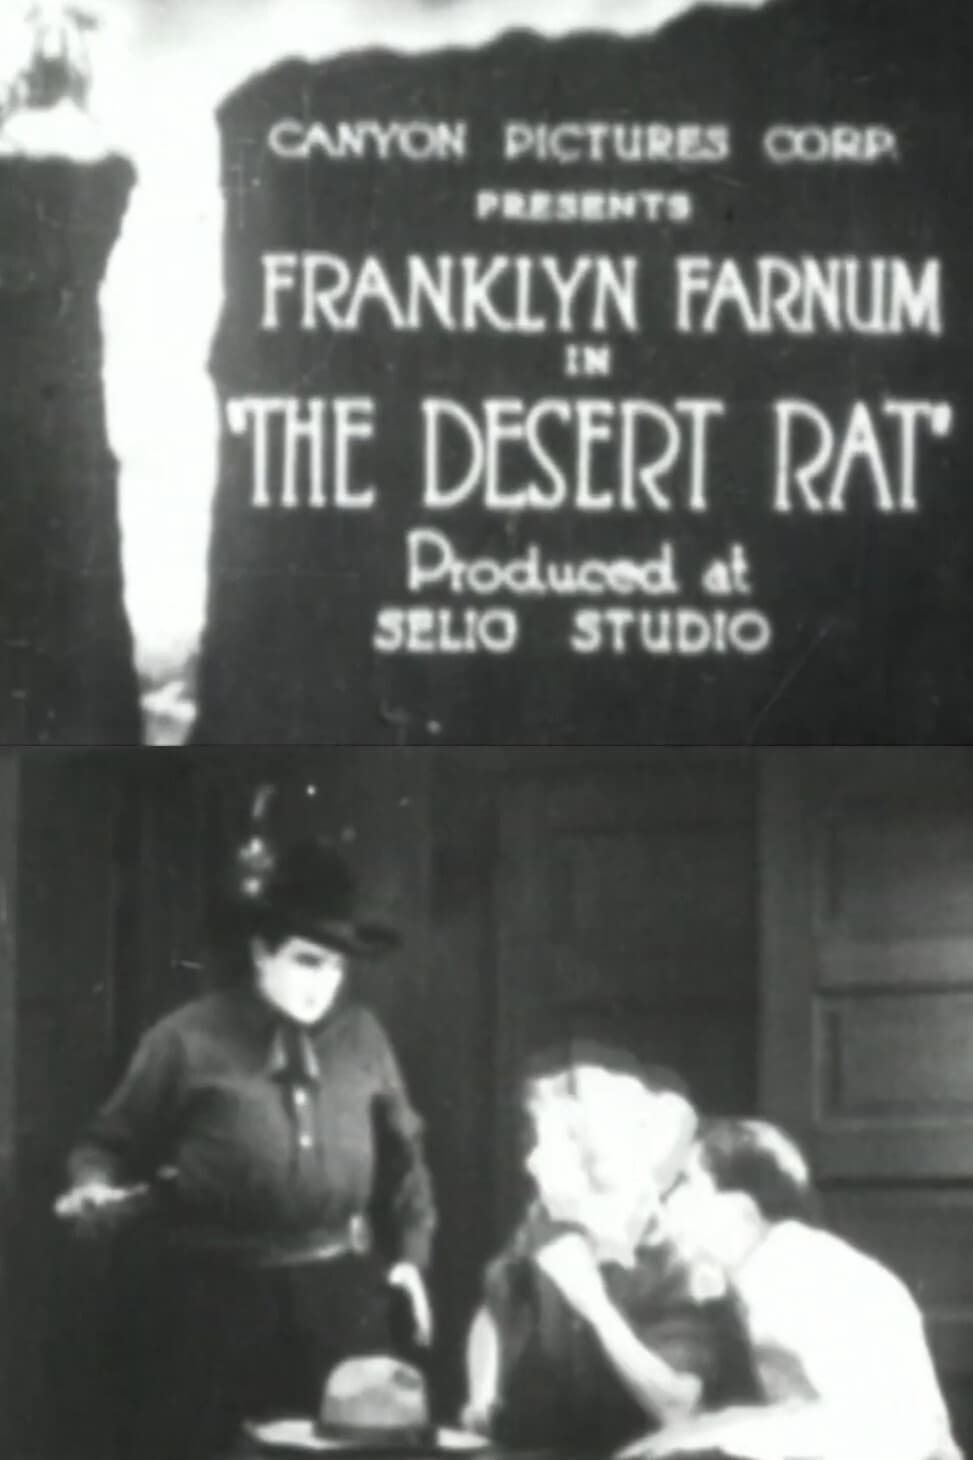 The Desert Rat (1919)